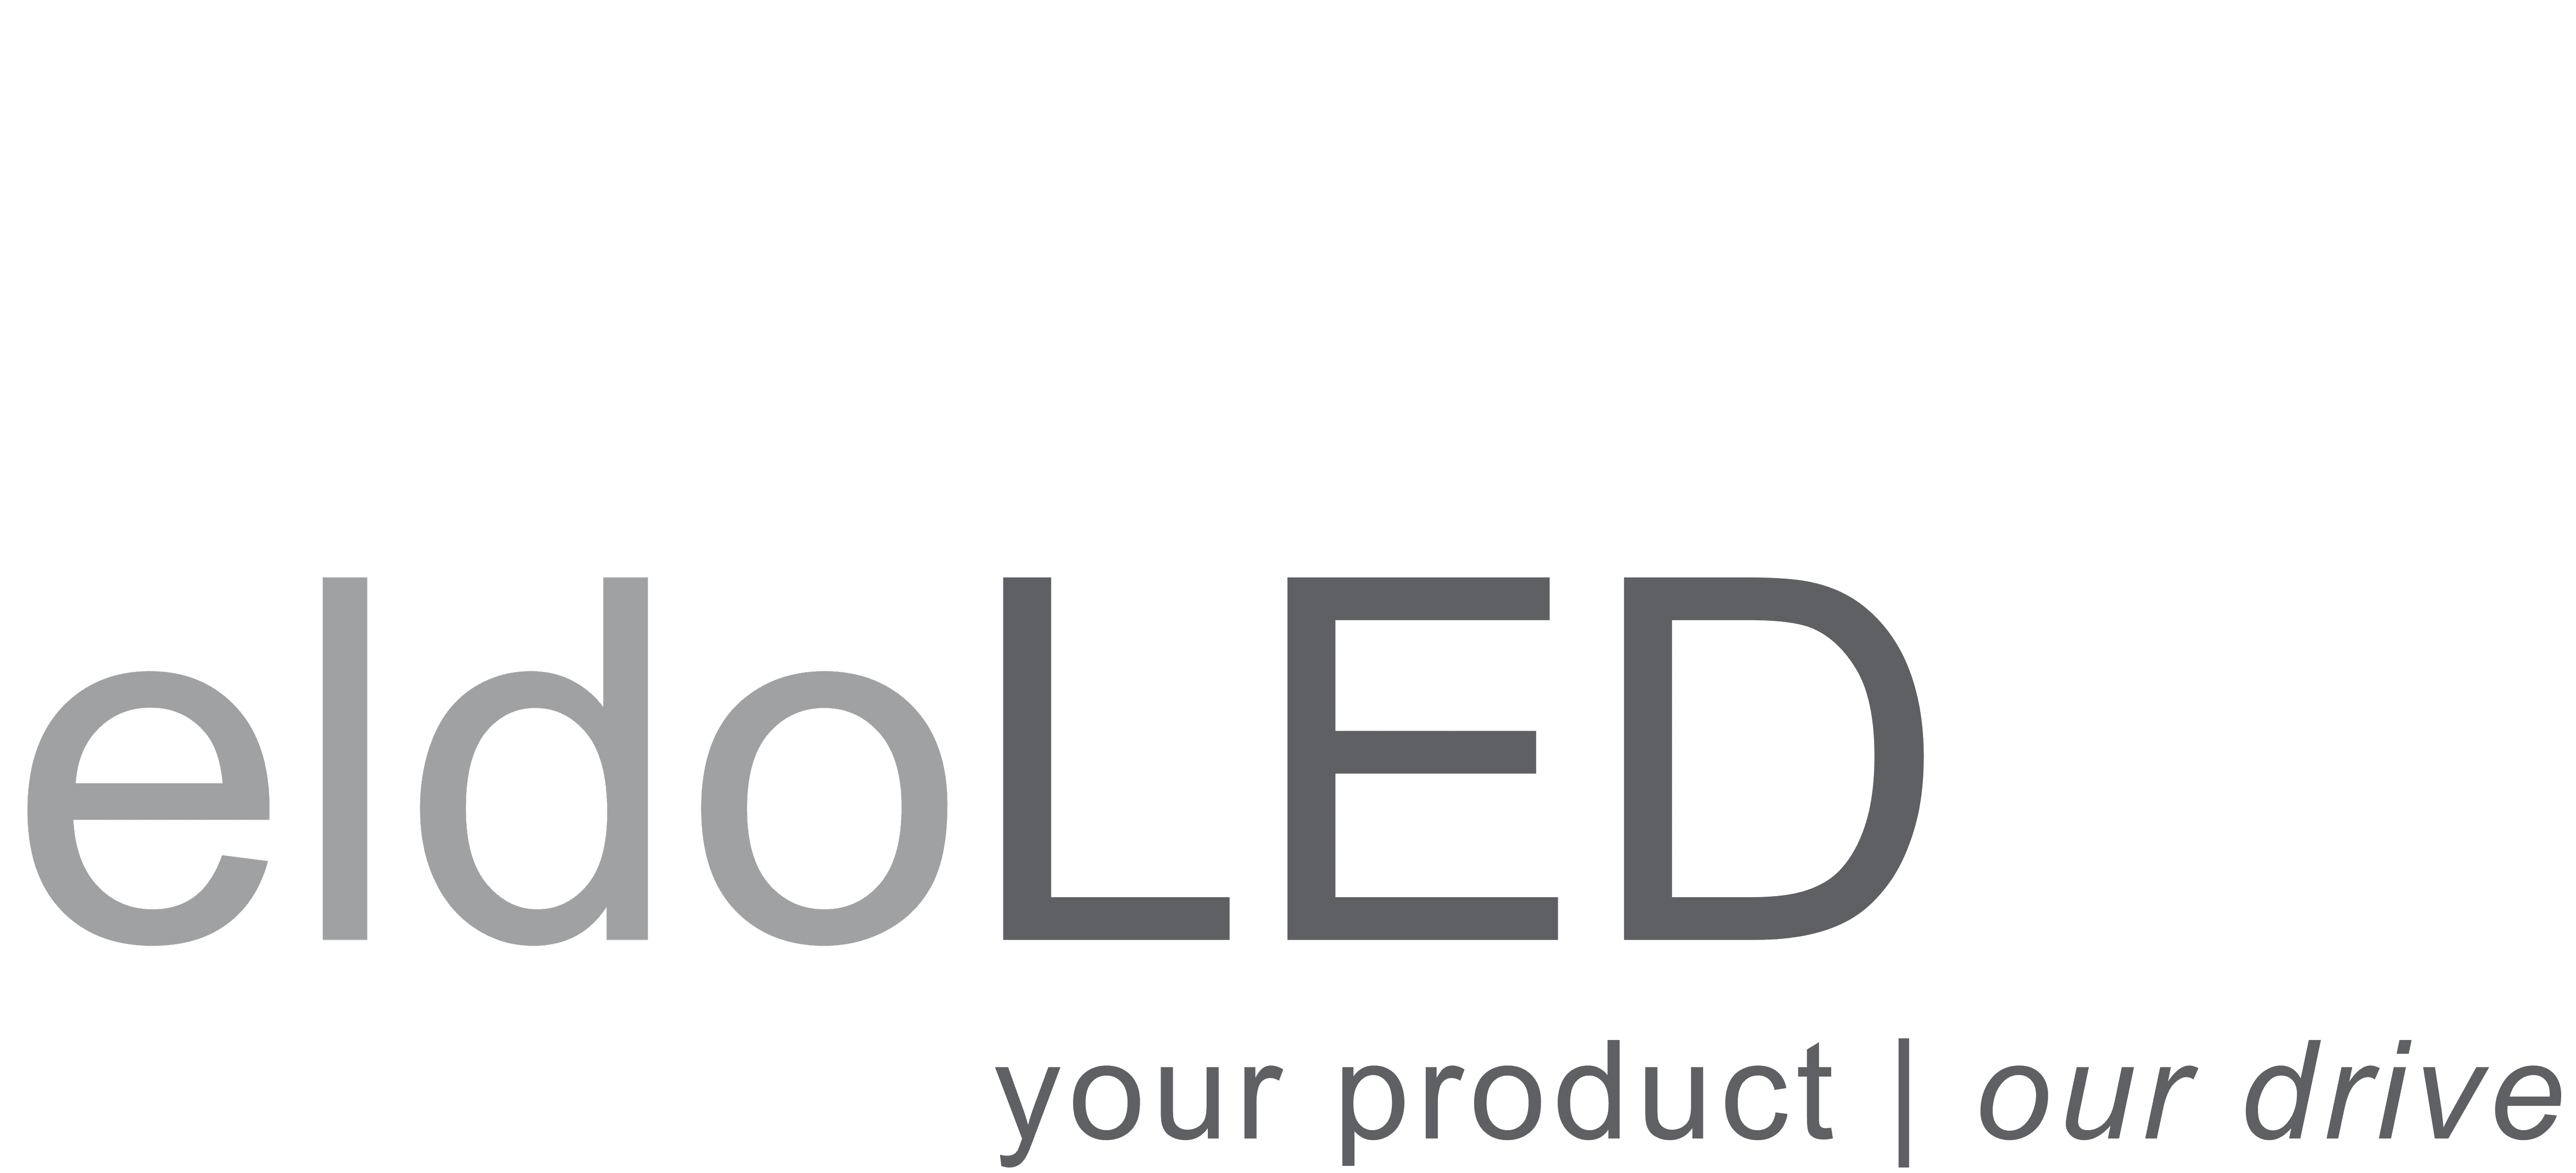 EldoLED_logo